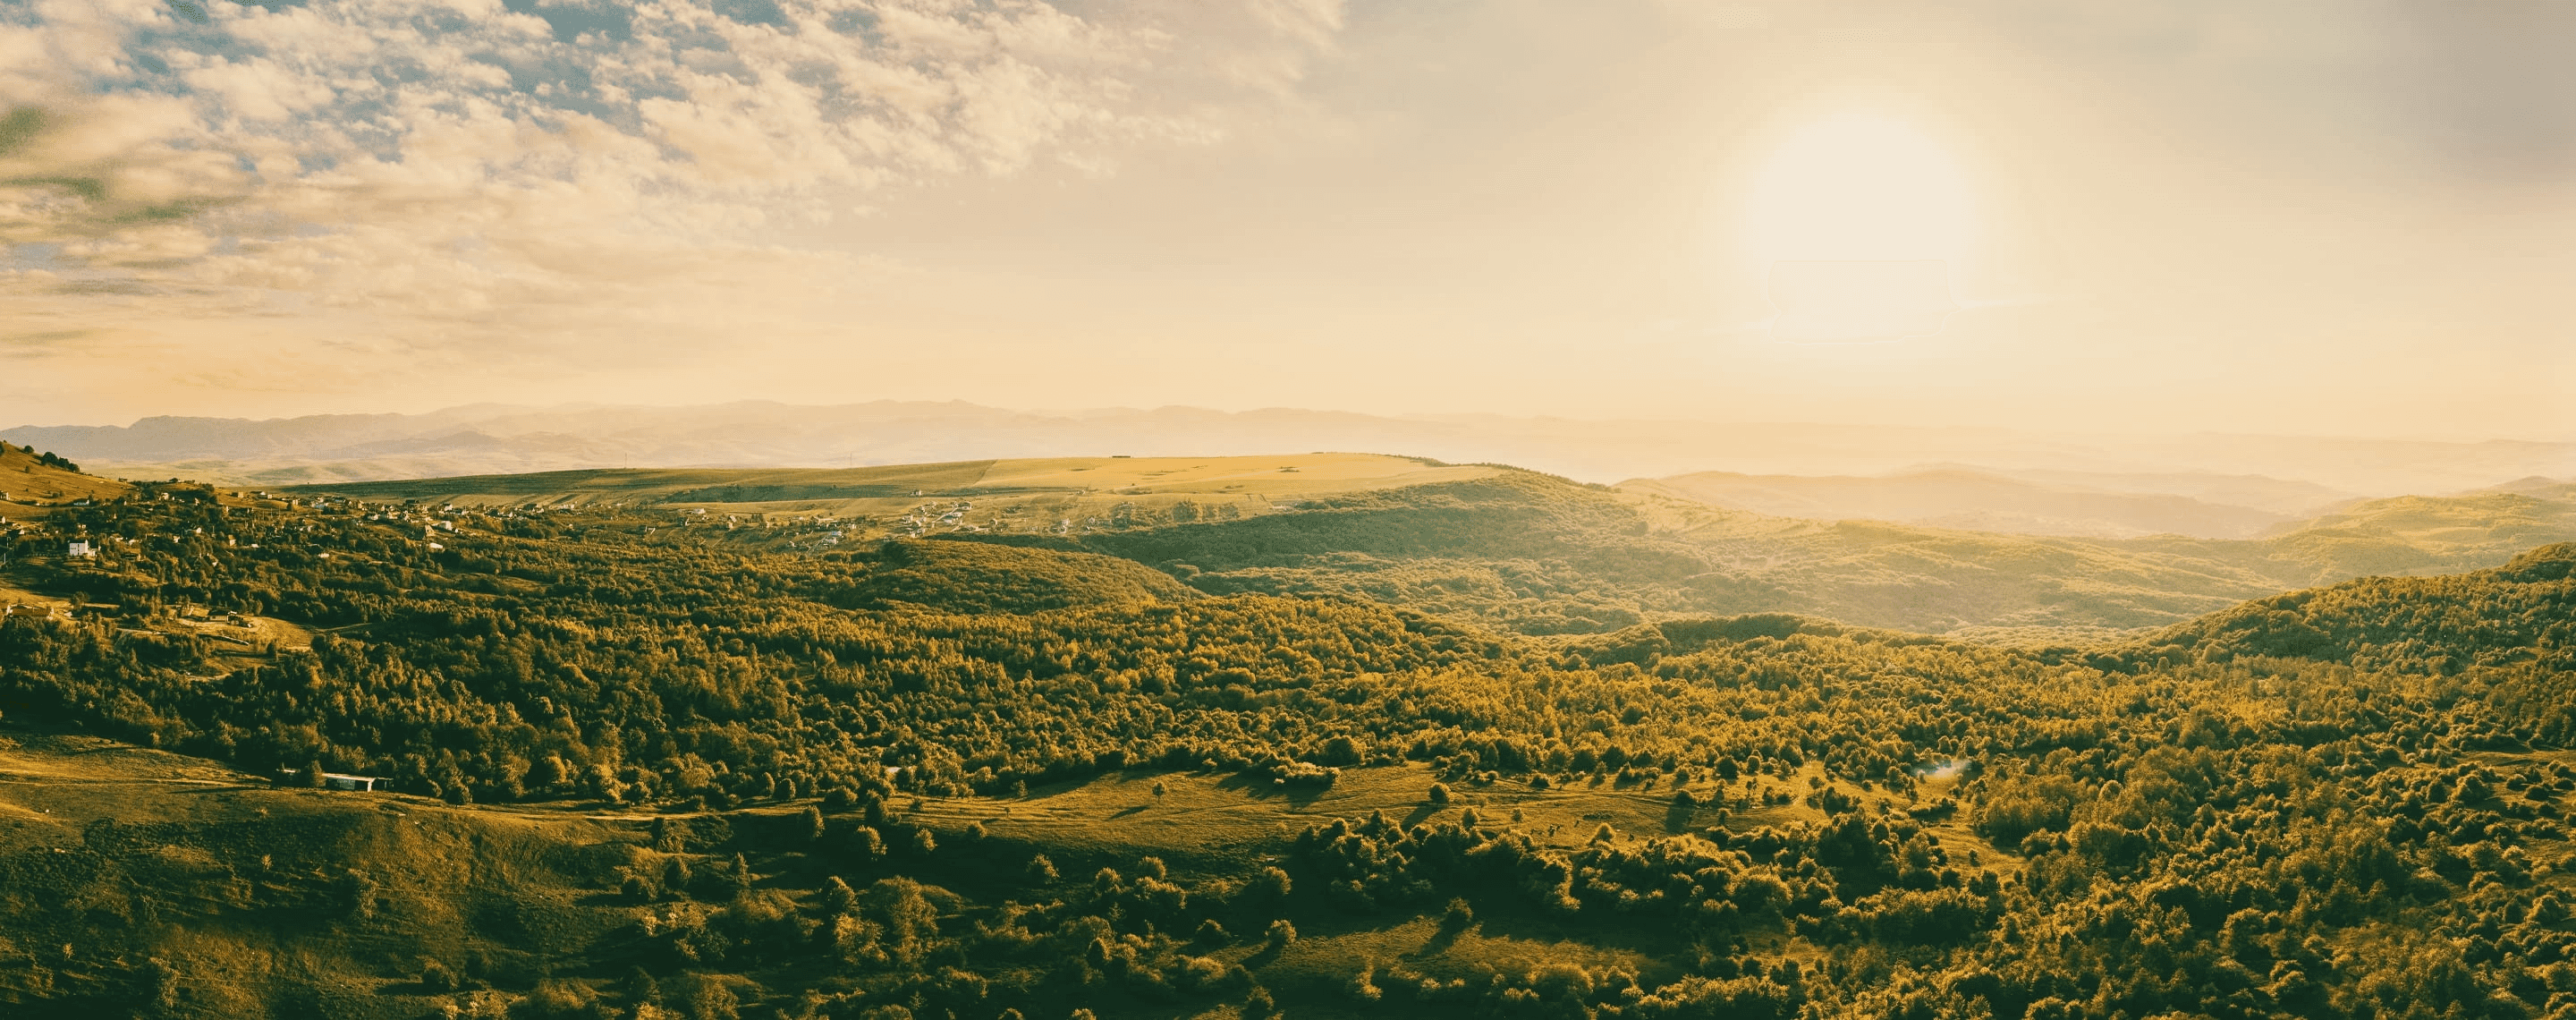 Landschaftspanorama Salicea, Rumänien